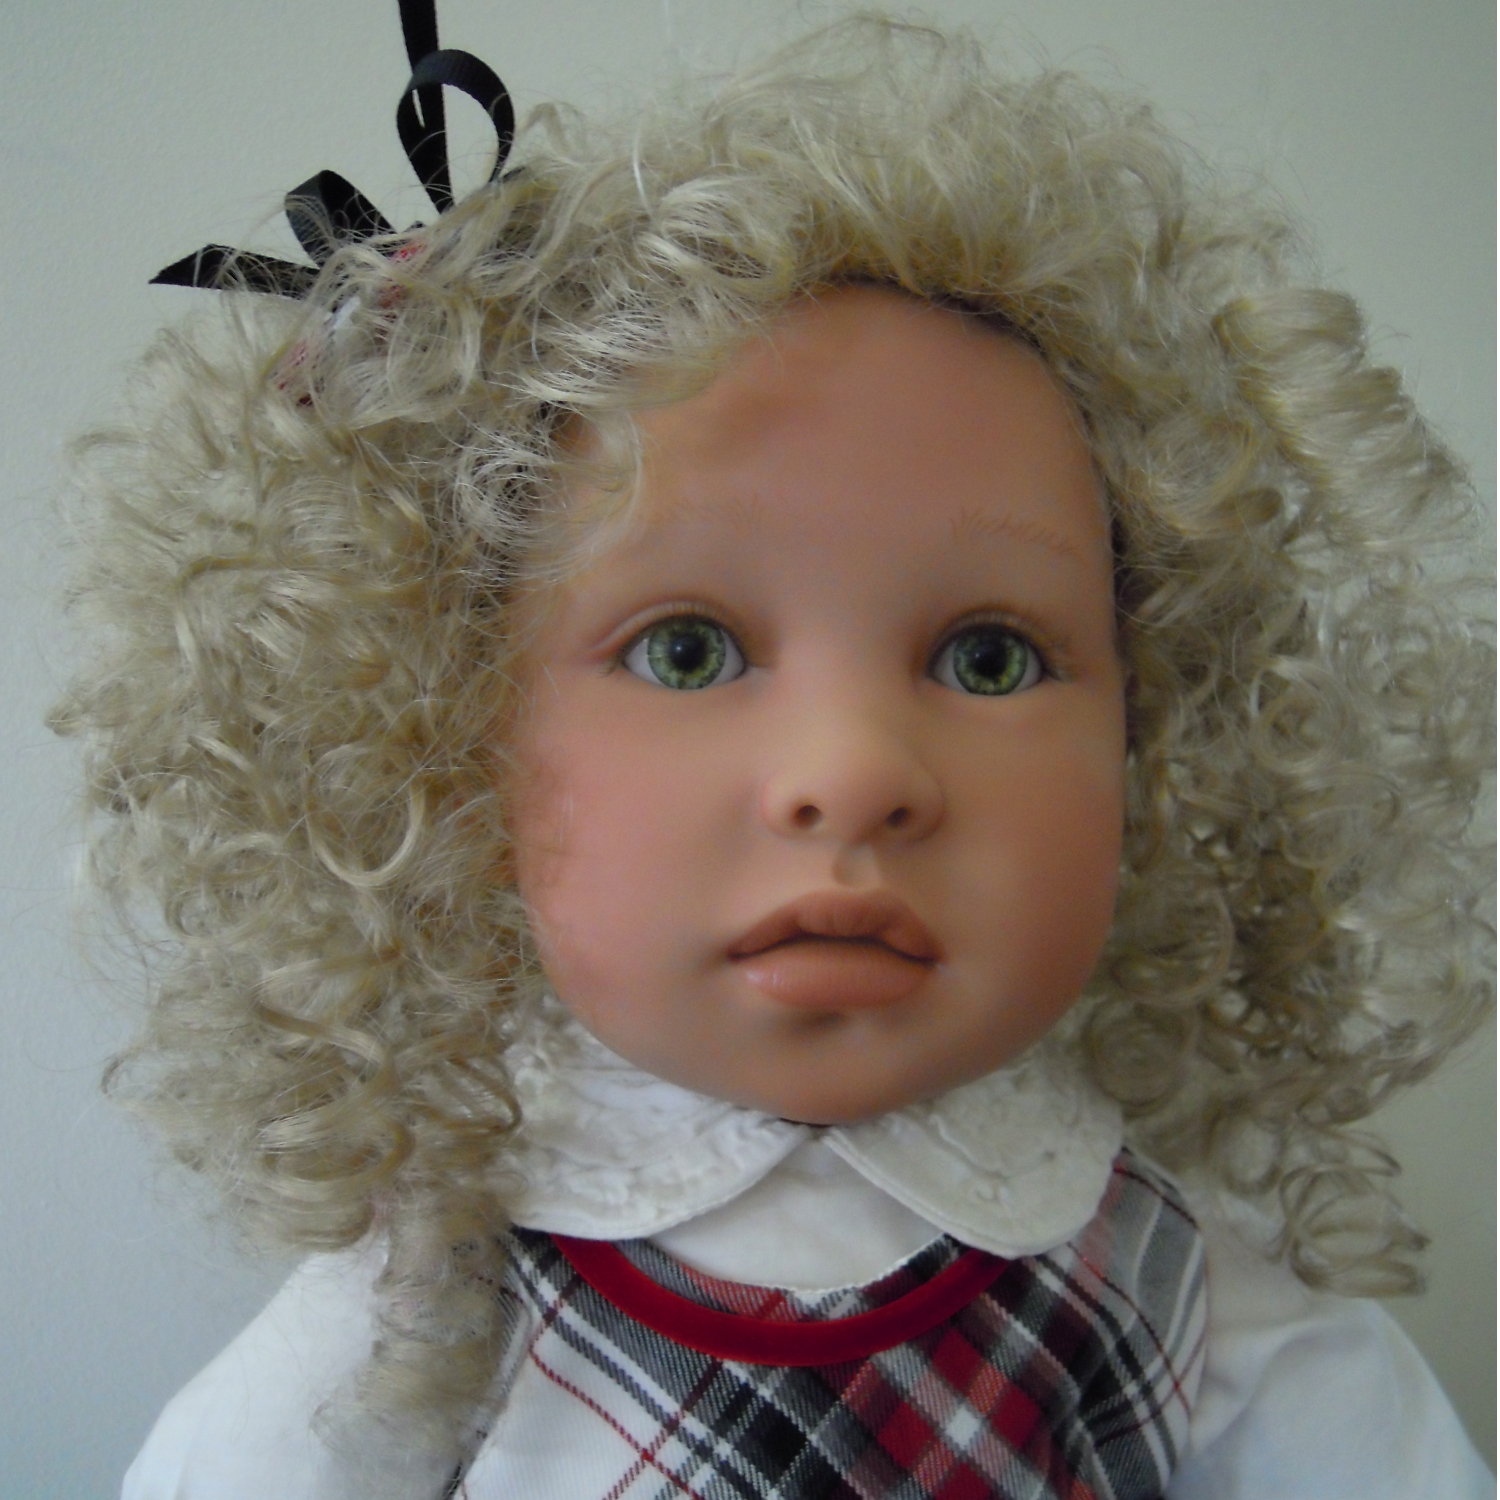 Modacrylic doll wig by Monique